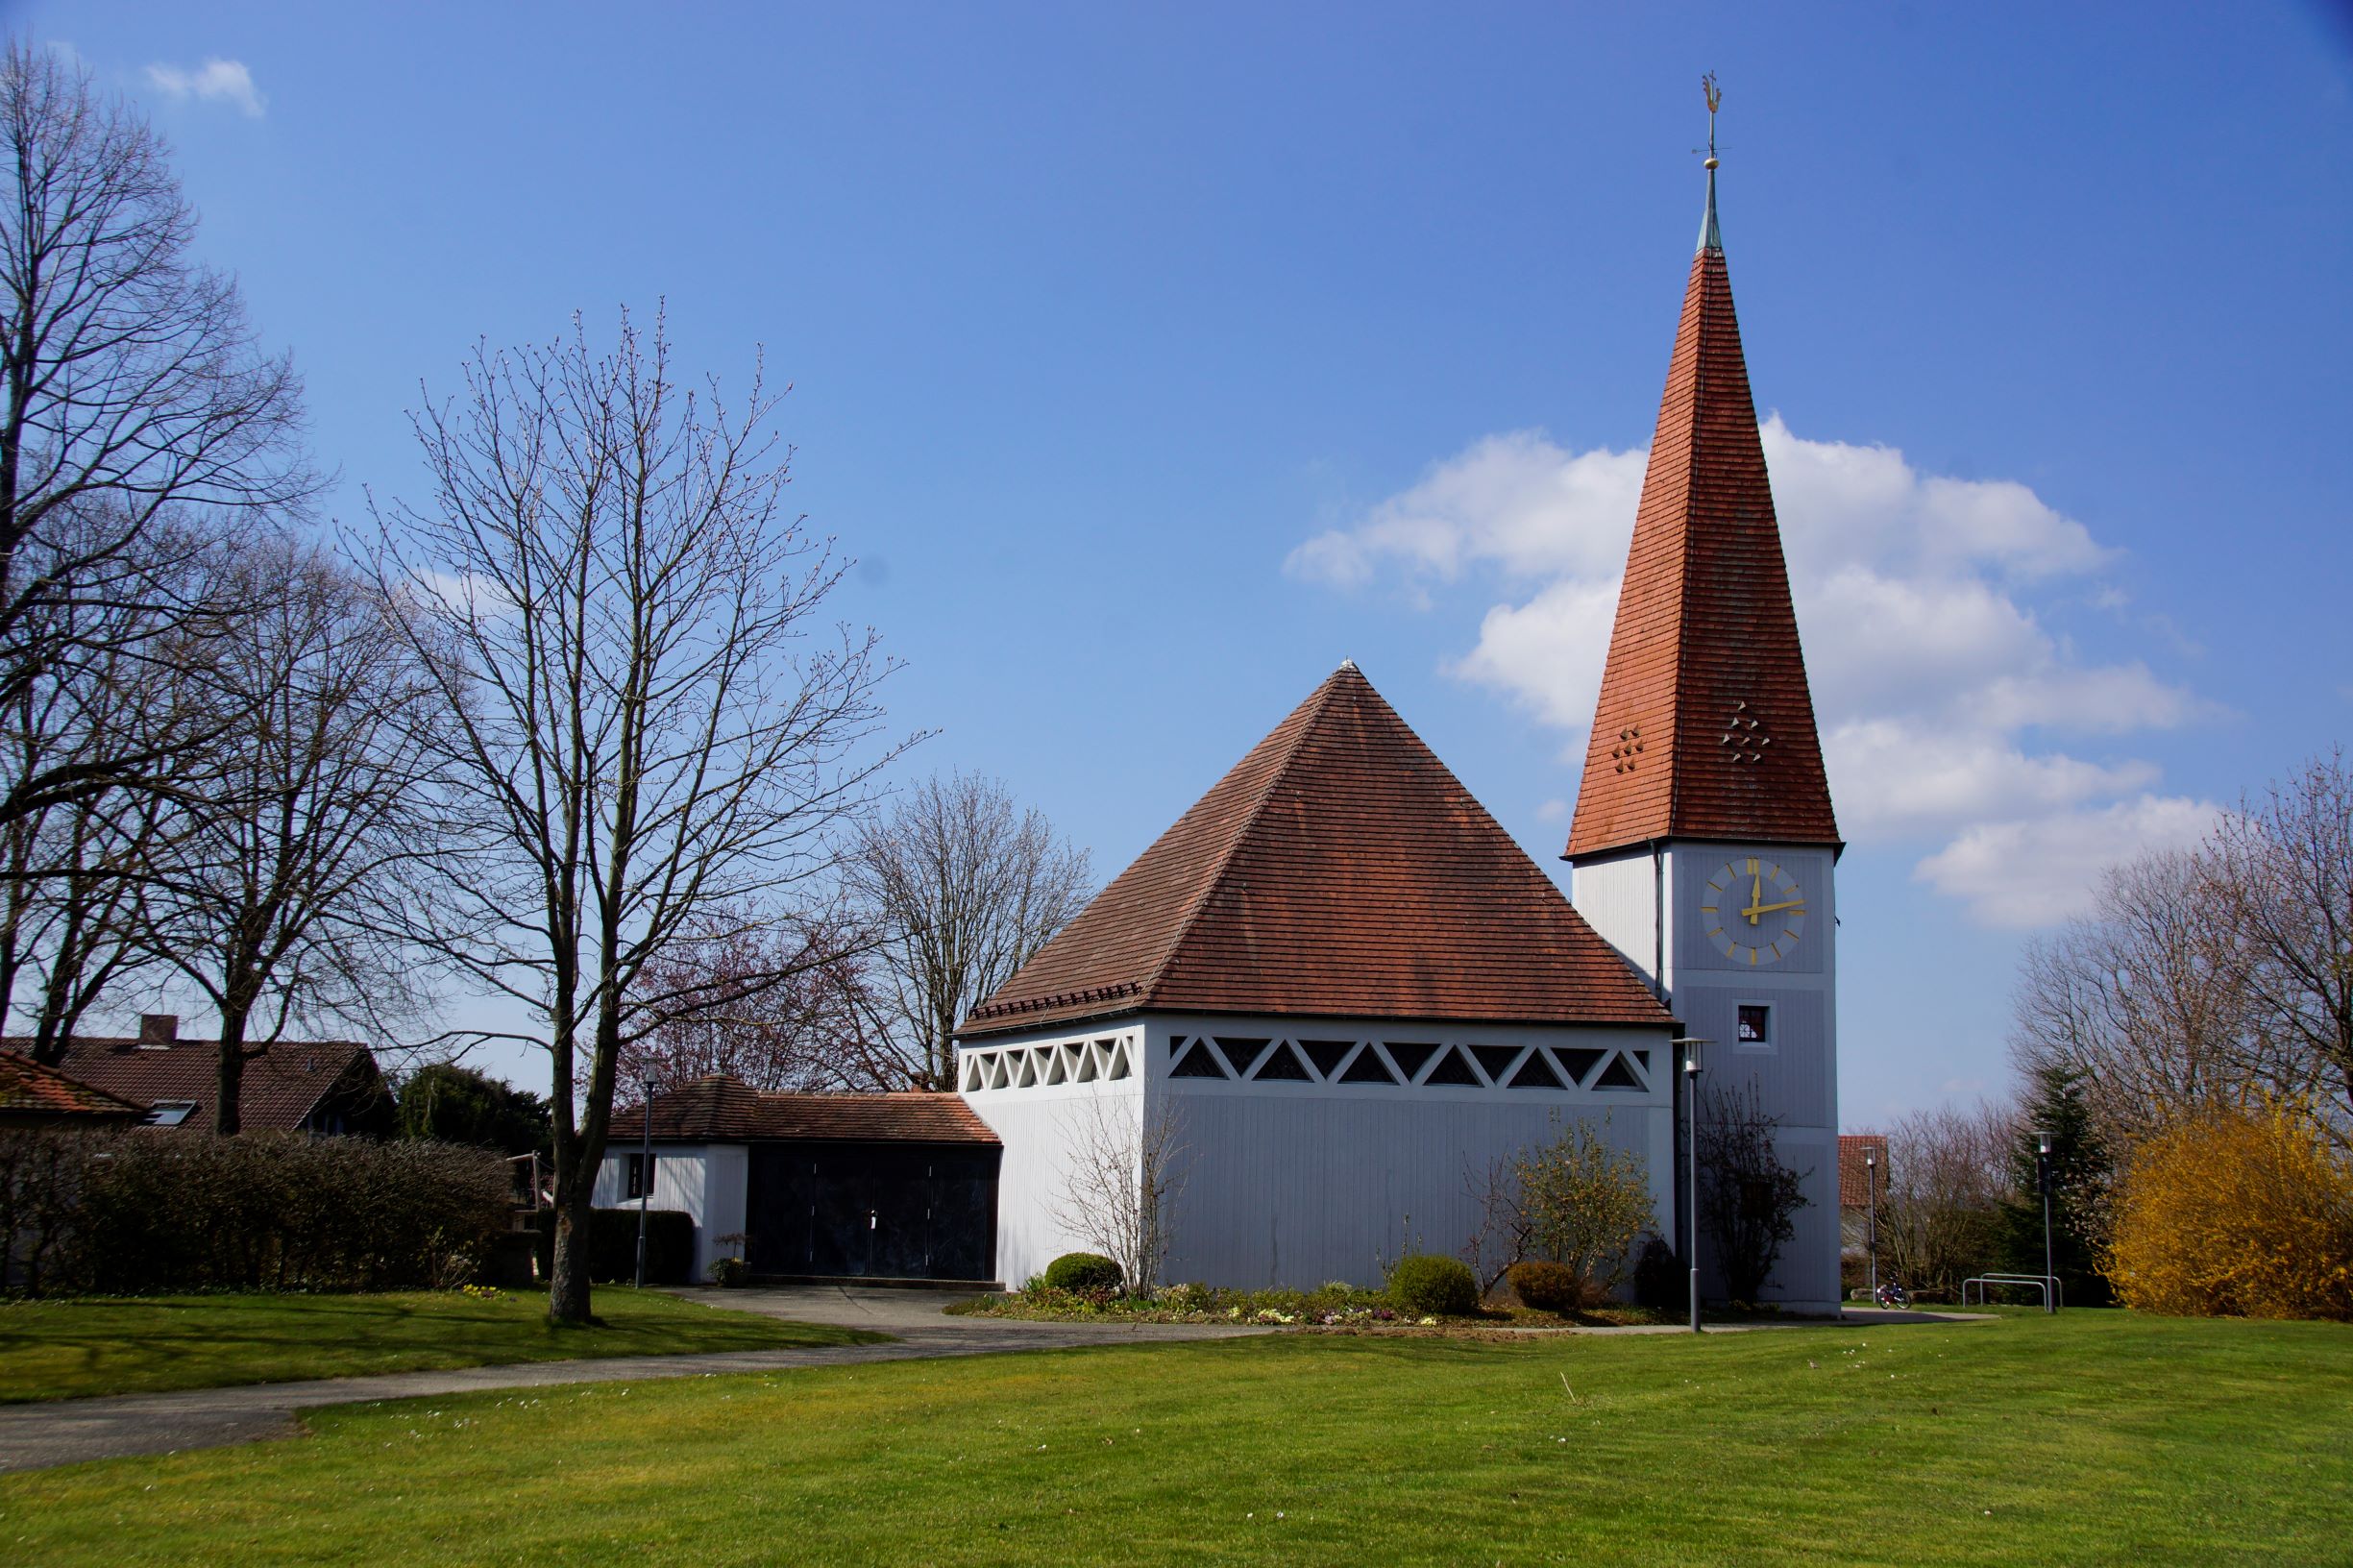 Auferstehungskirche - Evangelische Kirchengemeinde Thomashardt, Hegenloher Straße 34 in Lichtenwald